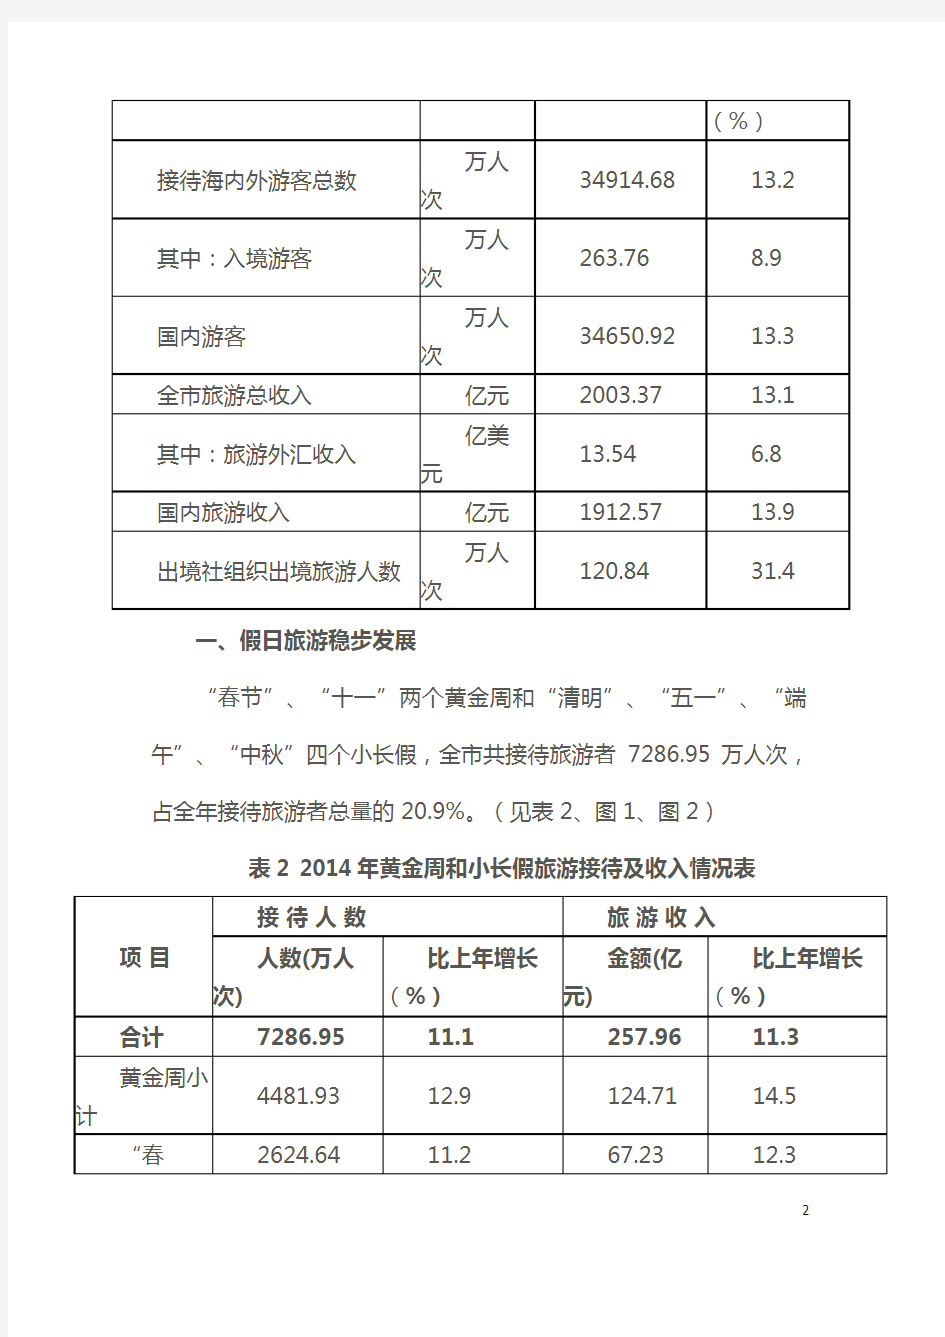 2014年重庆市旅游业统计公报